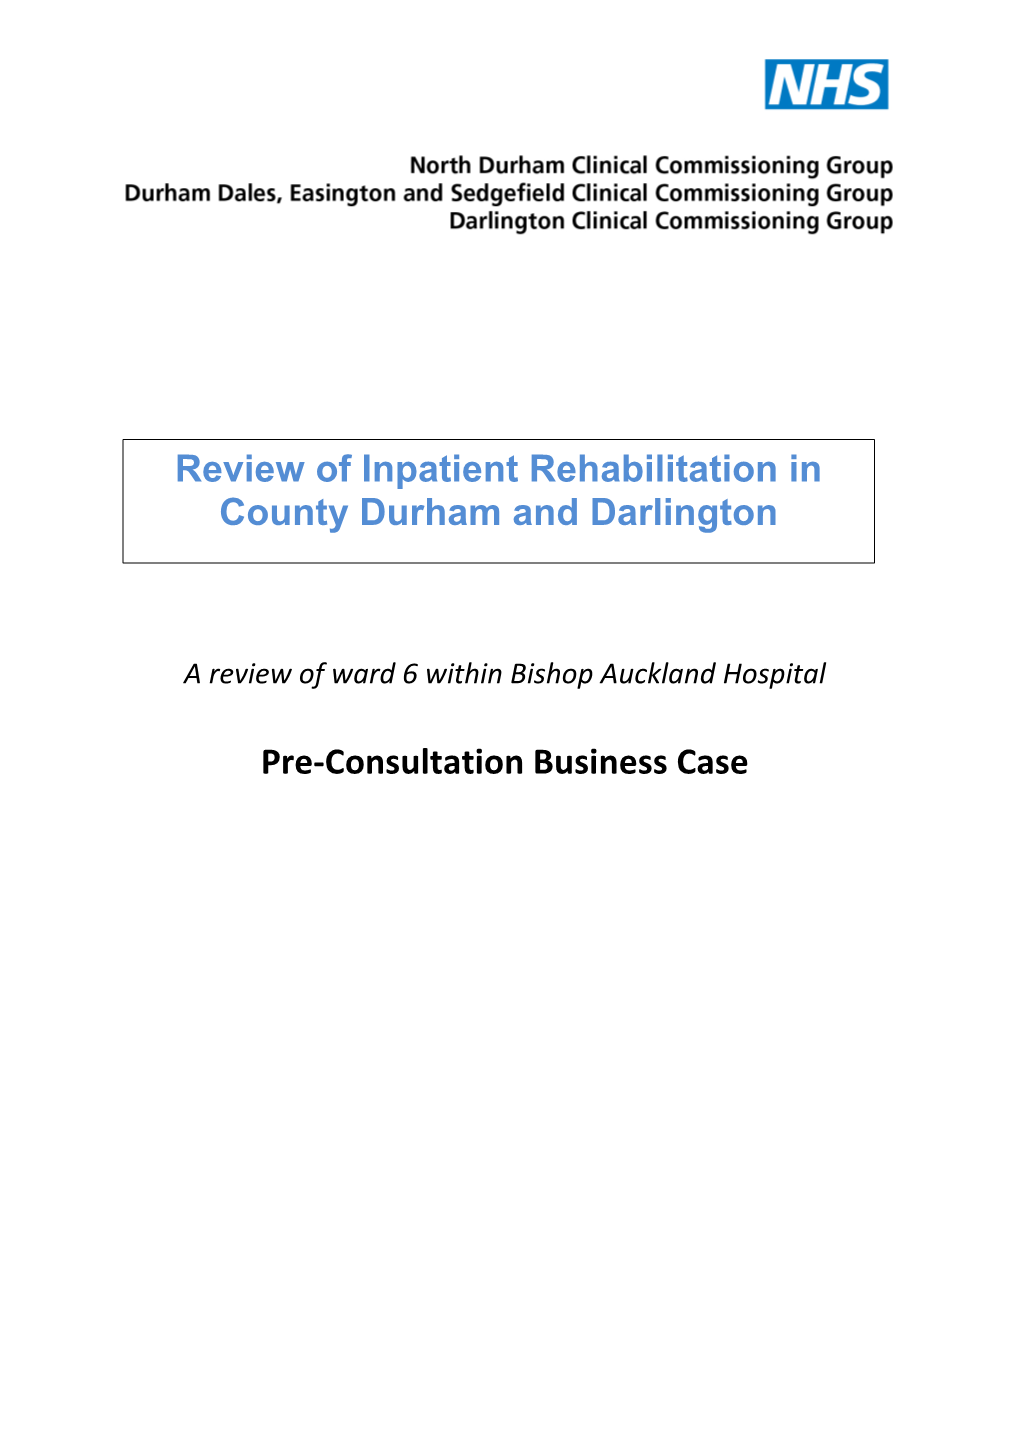 Inpatient Rehabilitation Business Case Proposal Darlington August